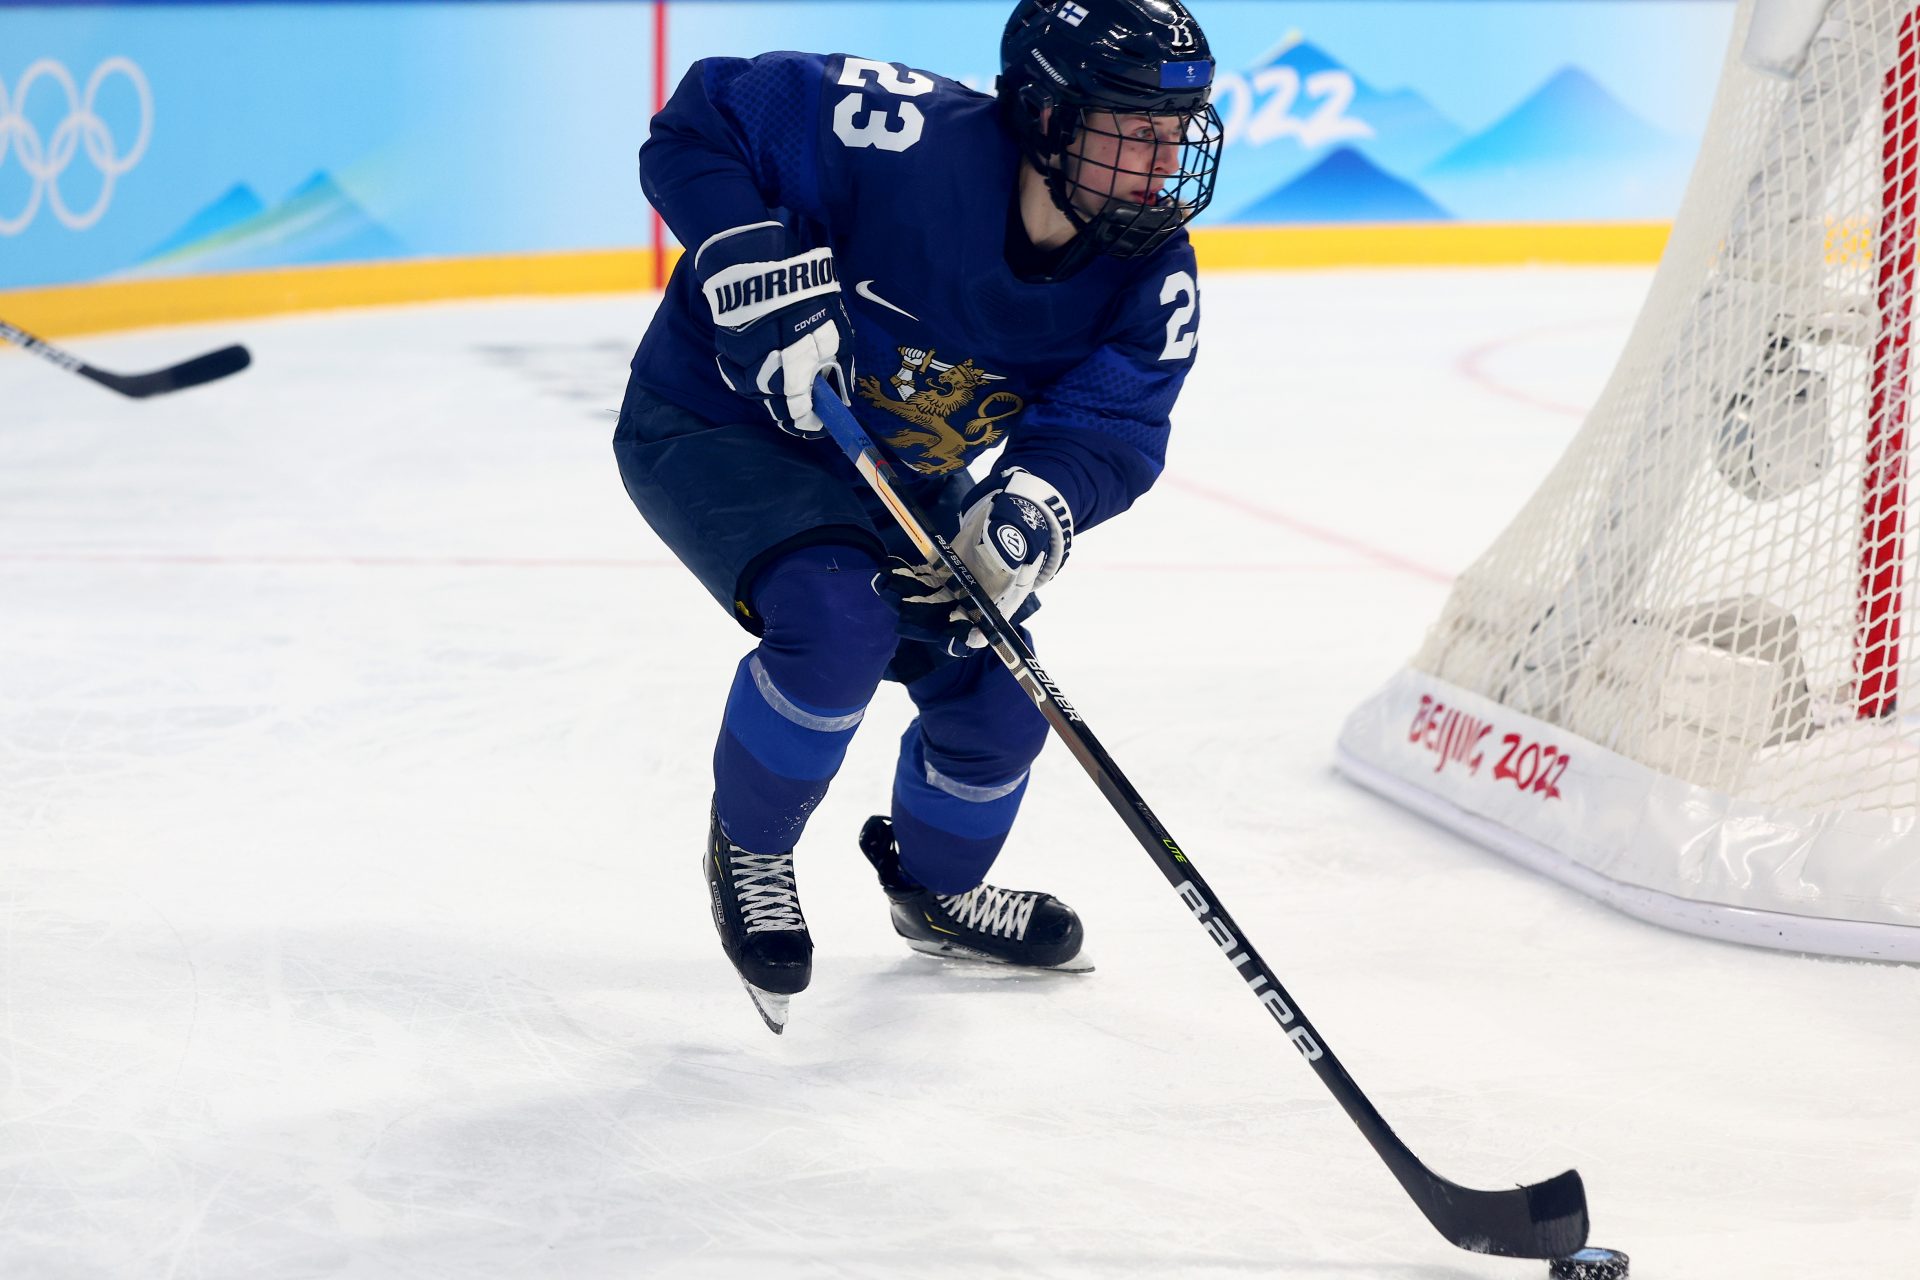 Fin de carrière dramatique pour la joueuse de hockey Sanni Hakala, paralysée après un choc